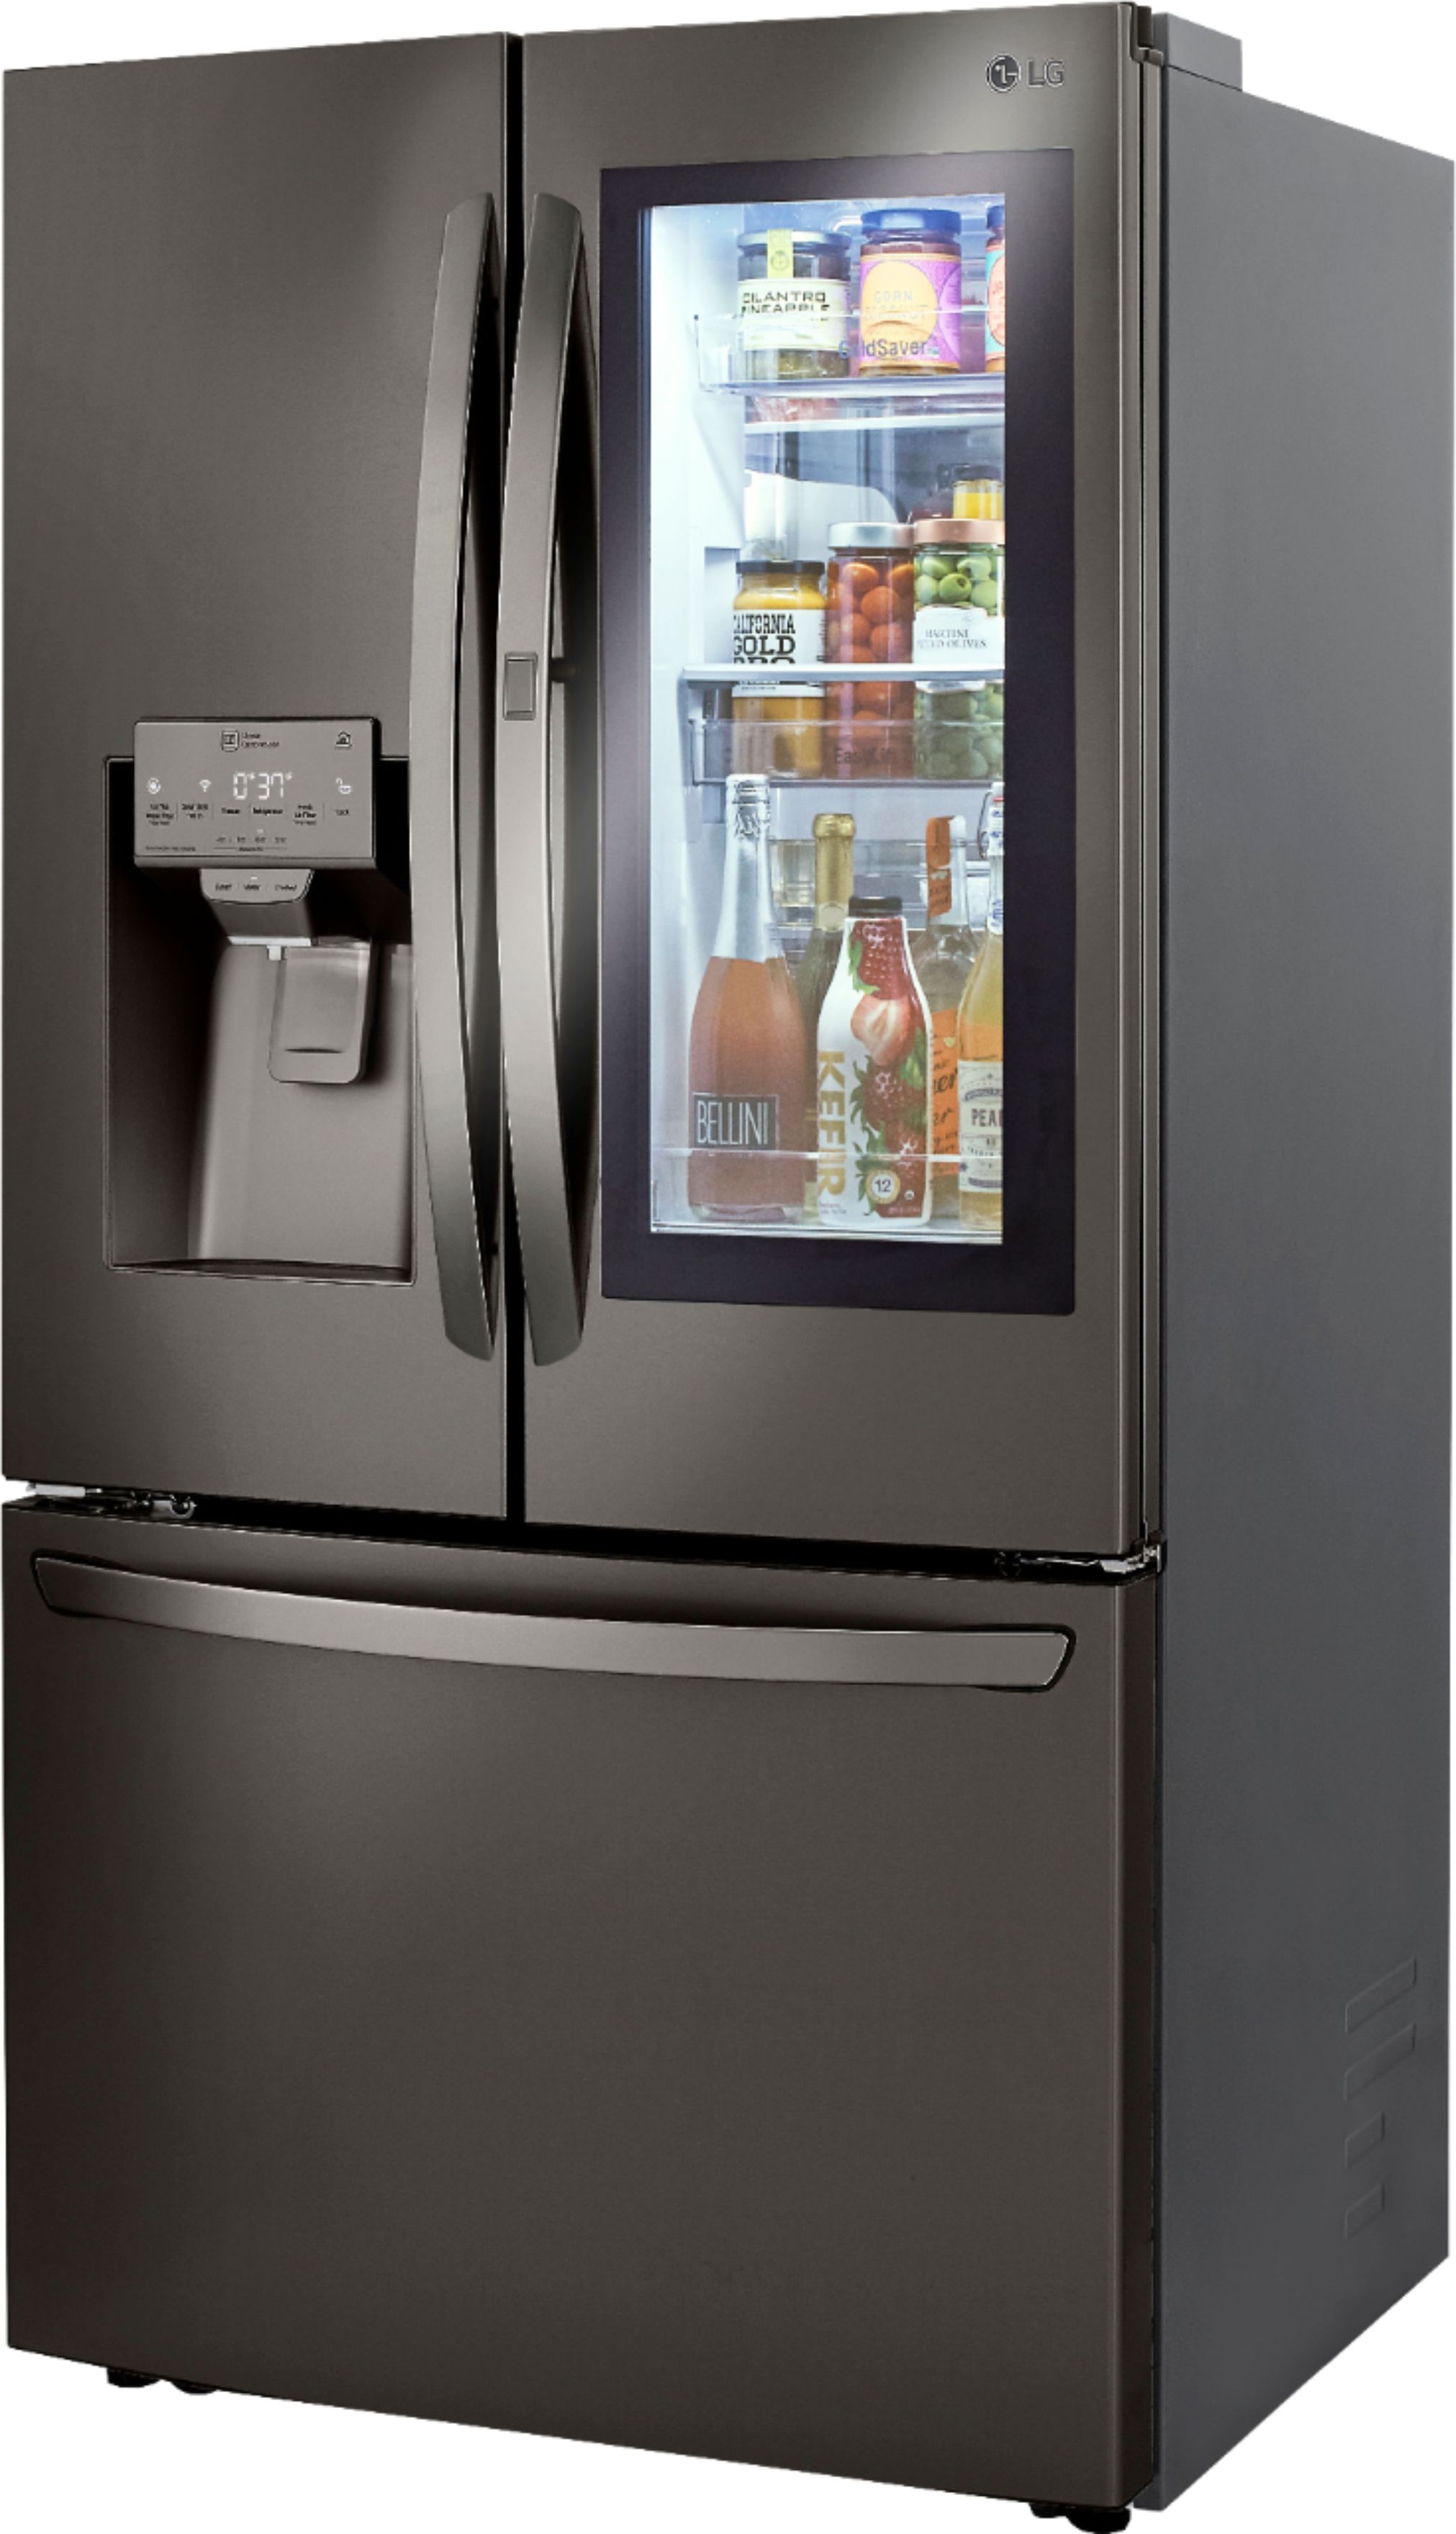 LG 23.5 Cu. Ft. French InstaView Door-in-Door Counter-Depth Stainless Steel Refrigerators At Best Buy